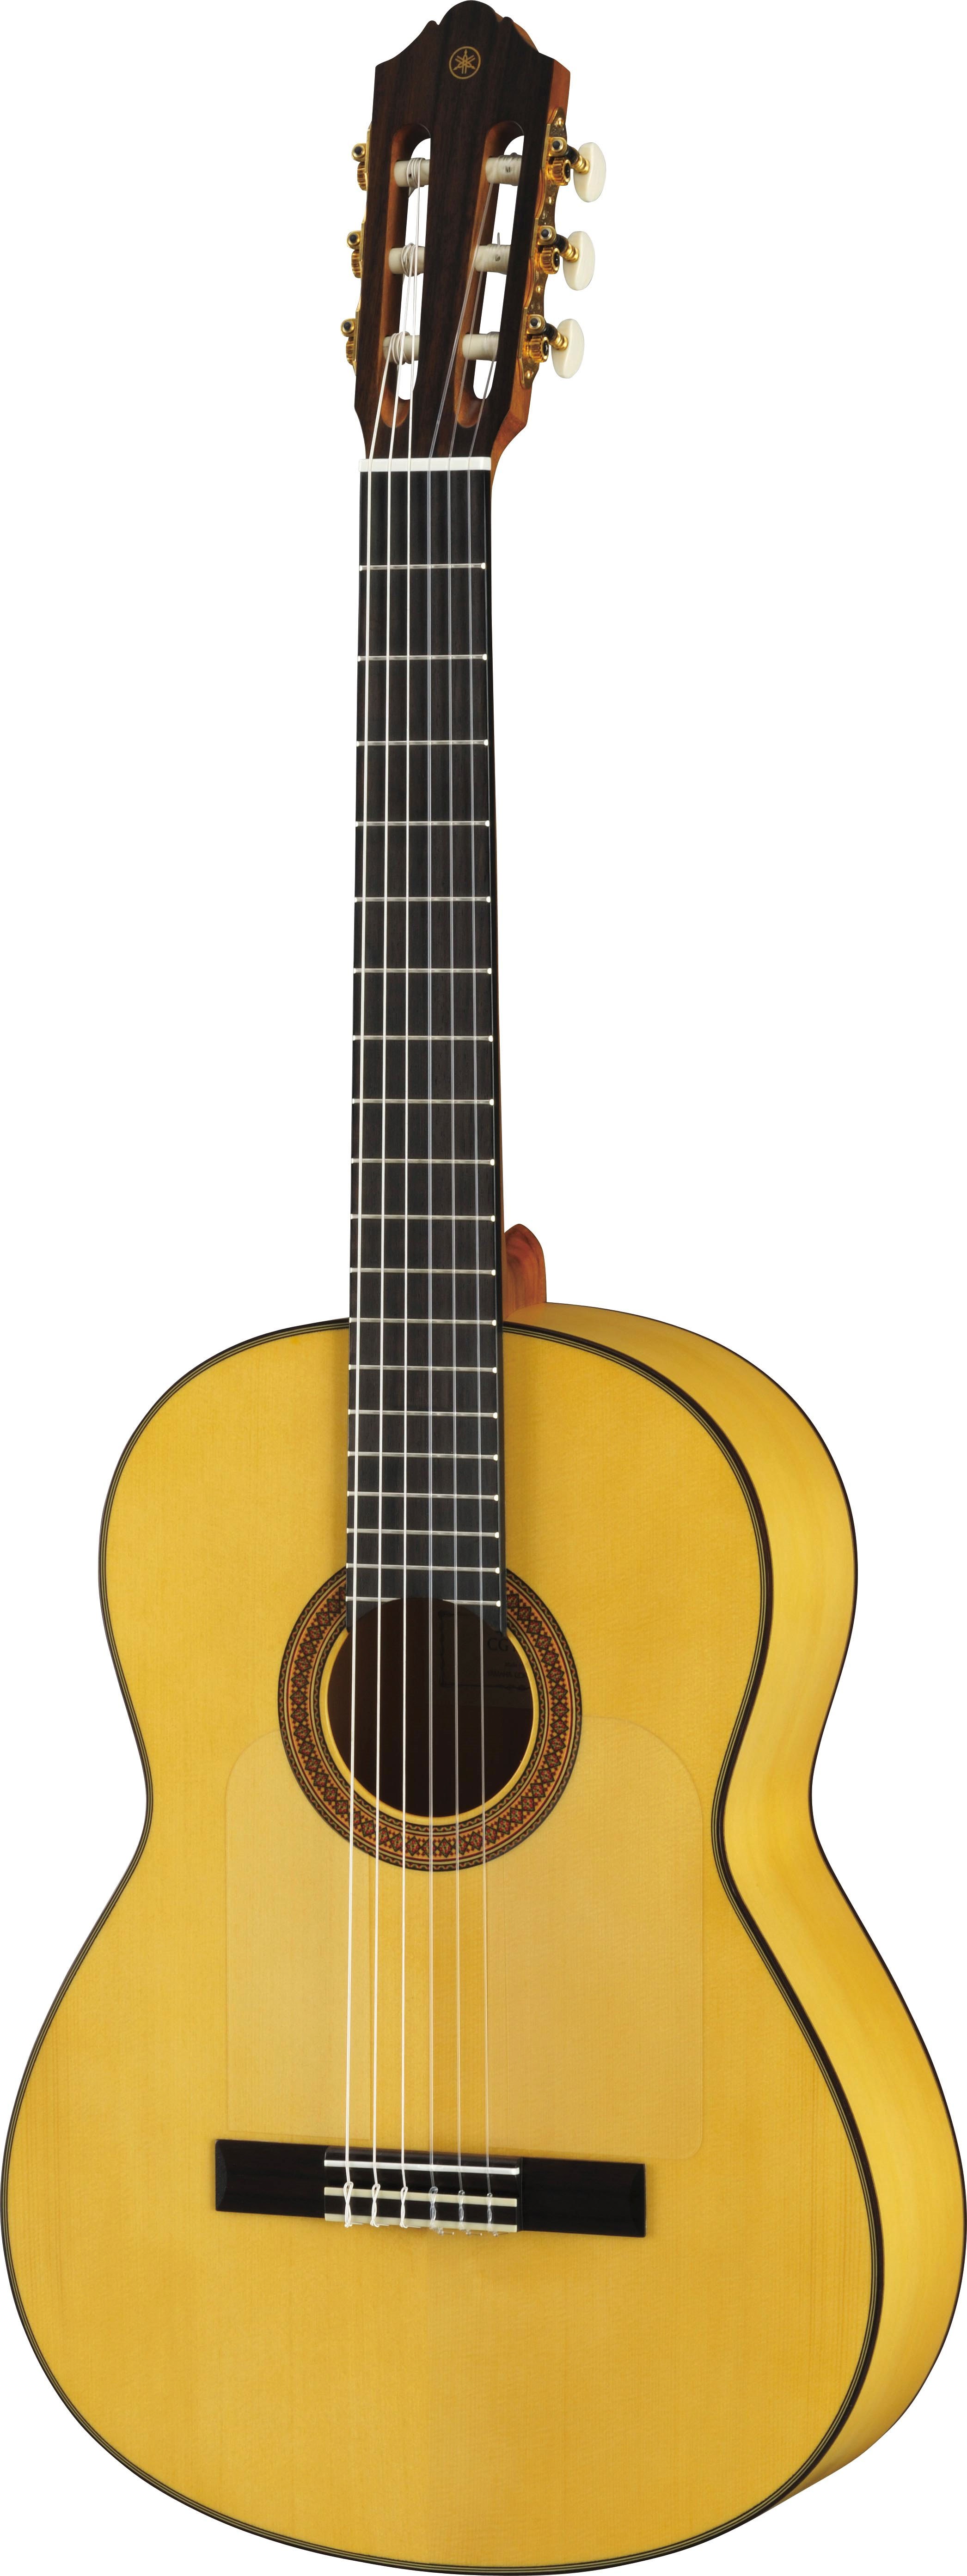 ヤマハ | CG182SF - クラシックギター・ナイロン弦ギター - 概要